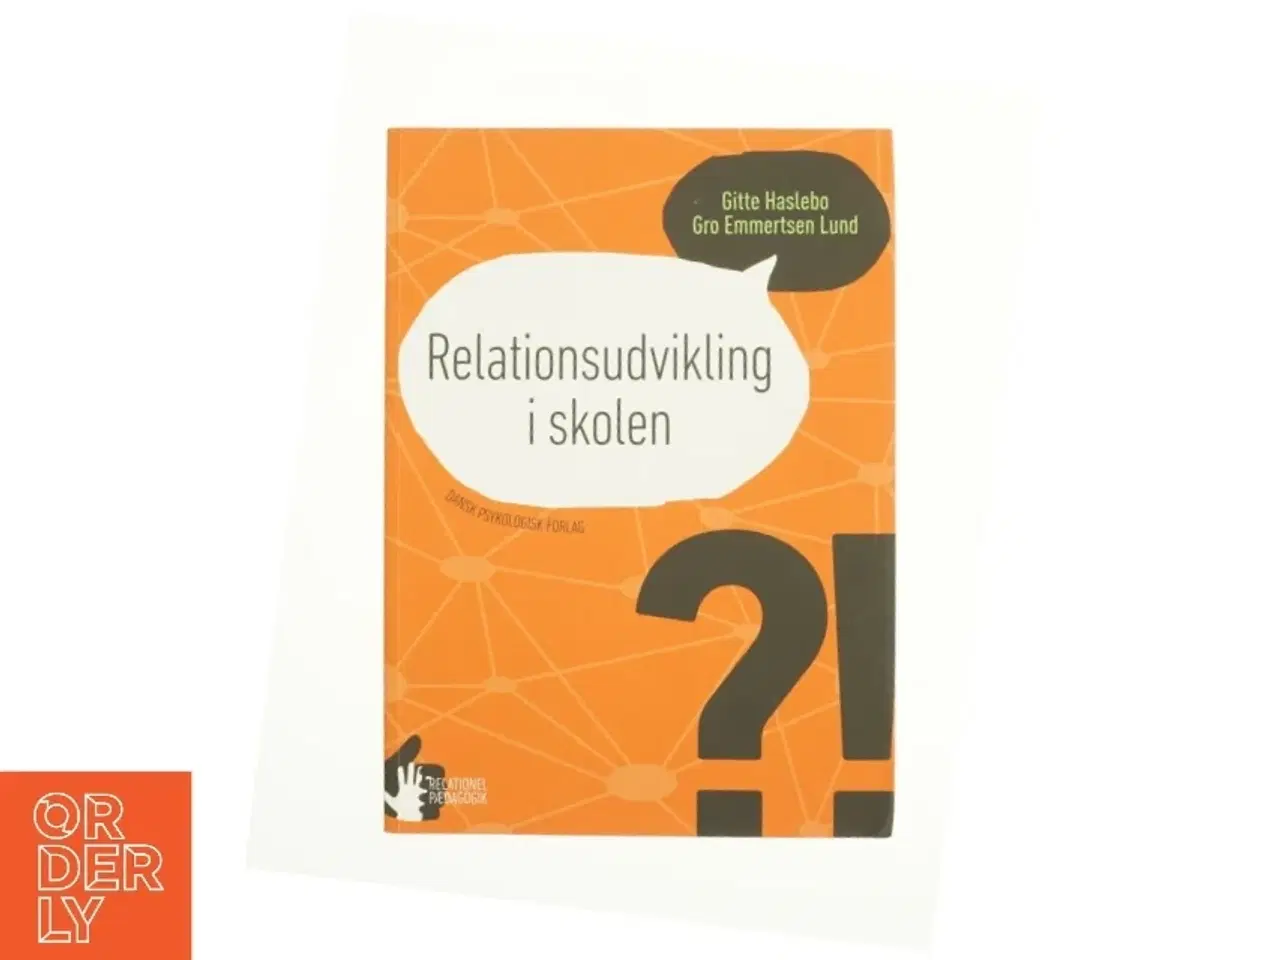 Billede 1 - Relationsudvikling i skolen af Gro Emmertsen Lund, Gitte Haslebo (Bog)